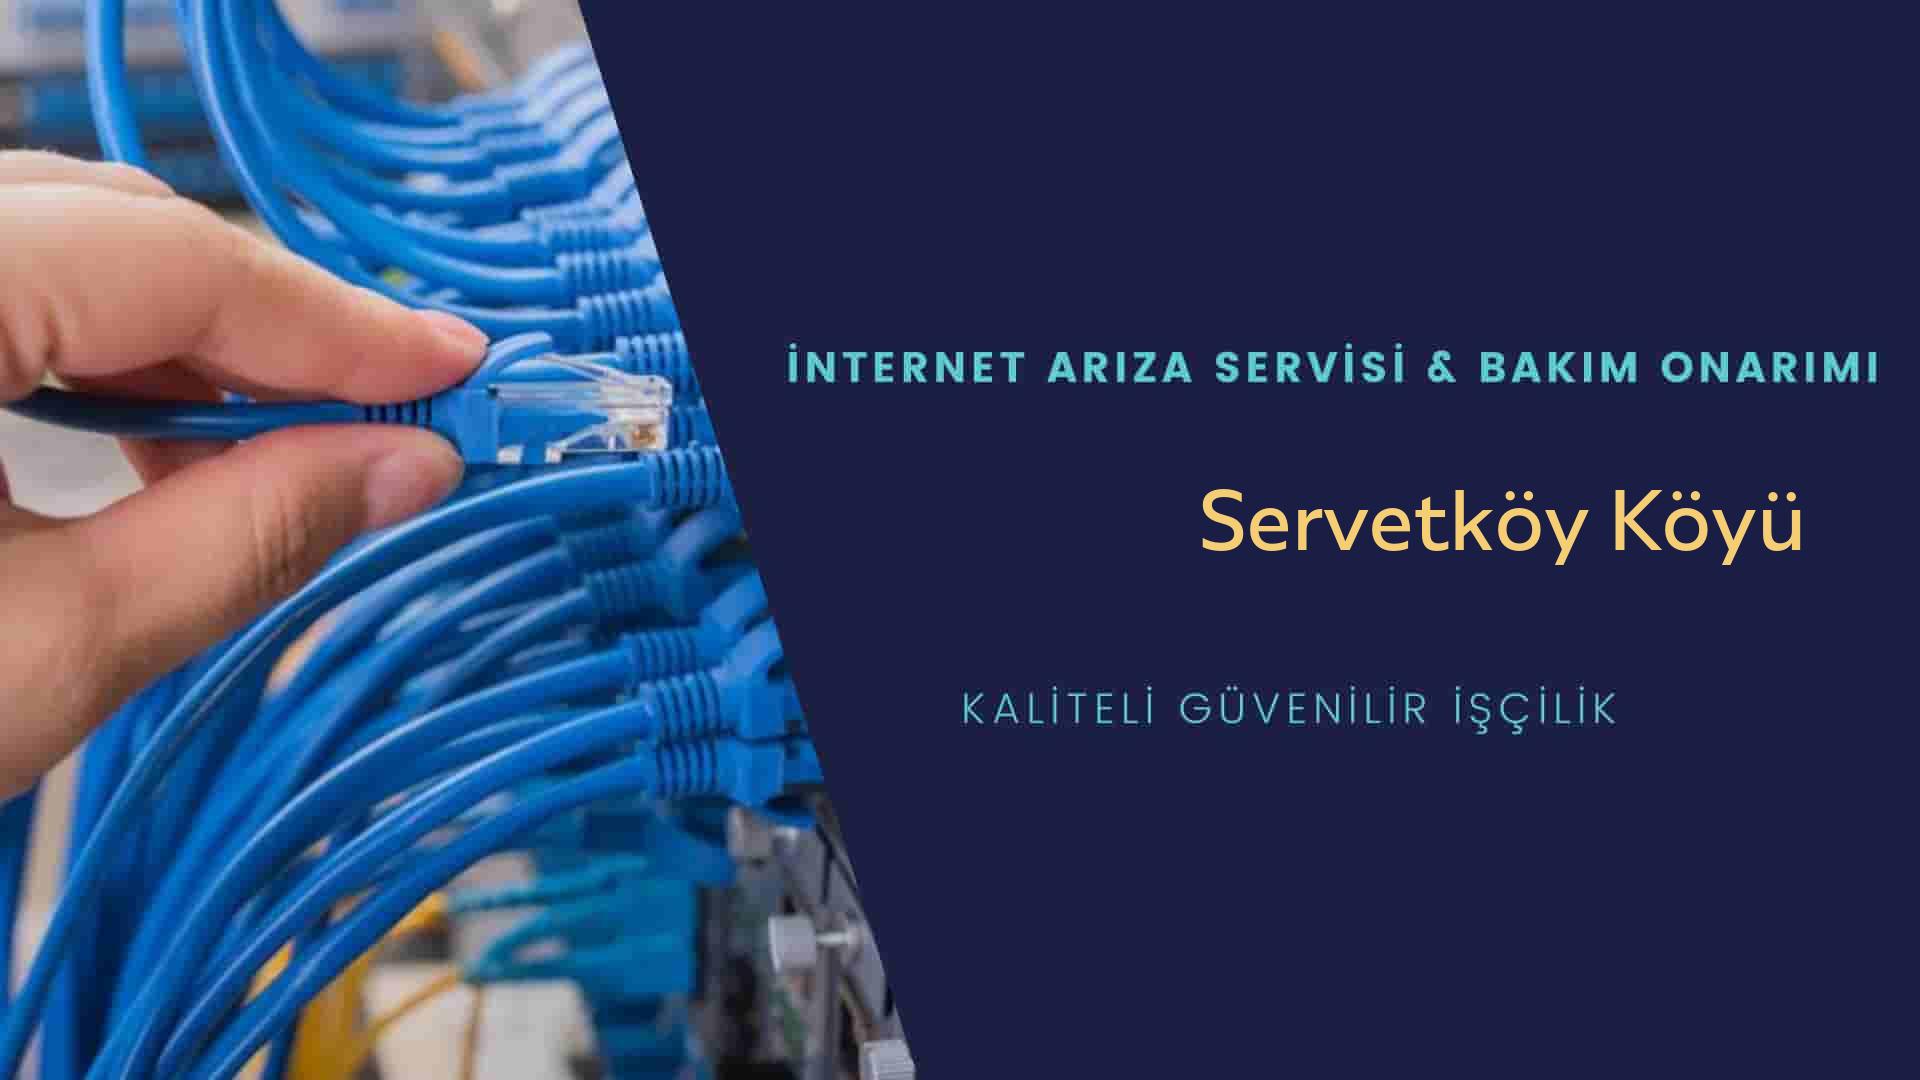 Servetköy Köyü internet kablosu çekimi yapan yerler veya elektrikçiler mi? arıyorsunuz doğru yerdesiniz o zaman sizlere 7/24 yardımcı olacak profesyonel ustalarımız bir telefon kadar yakındır size.